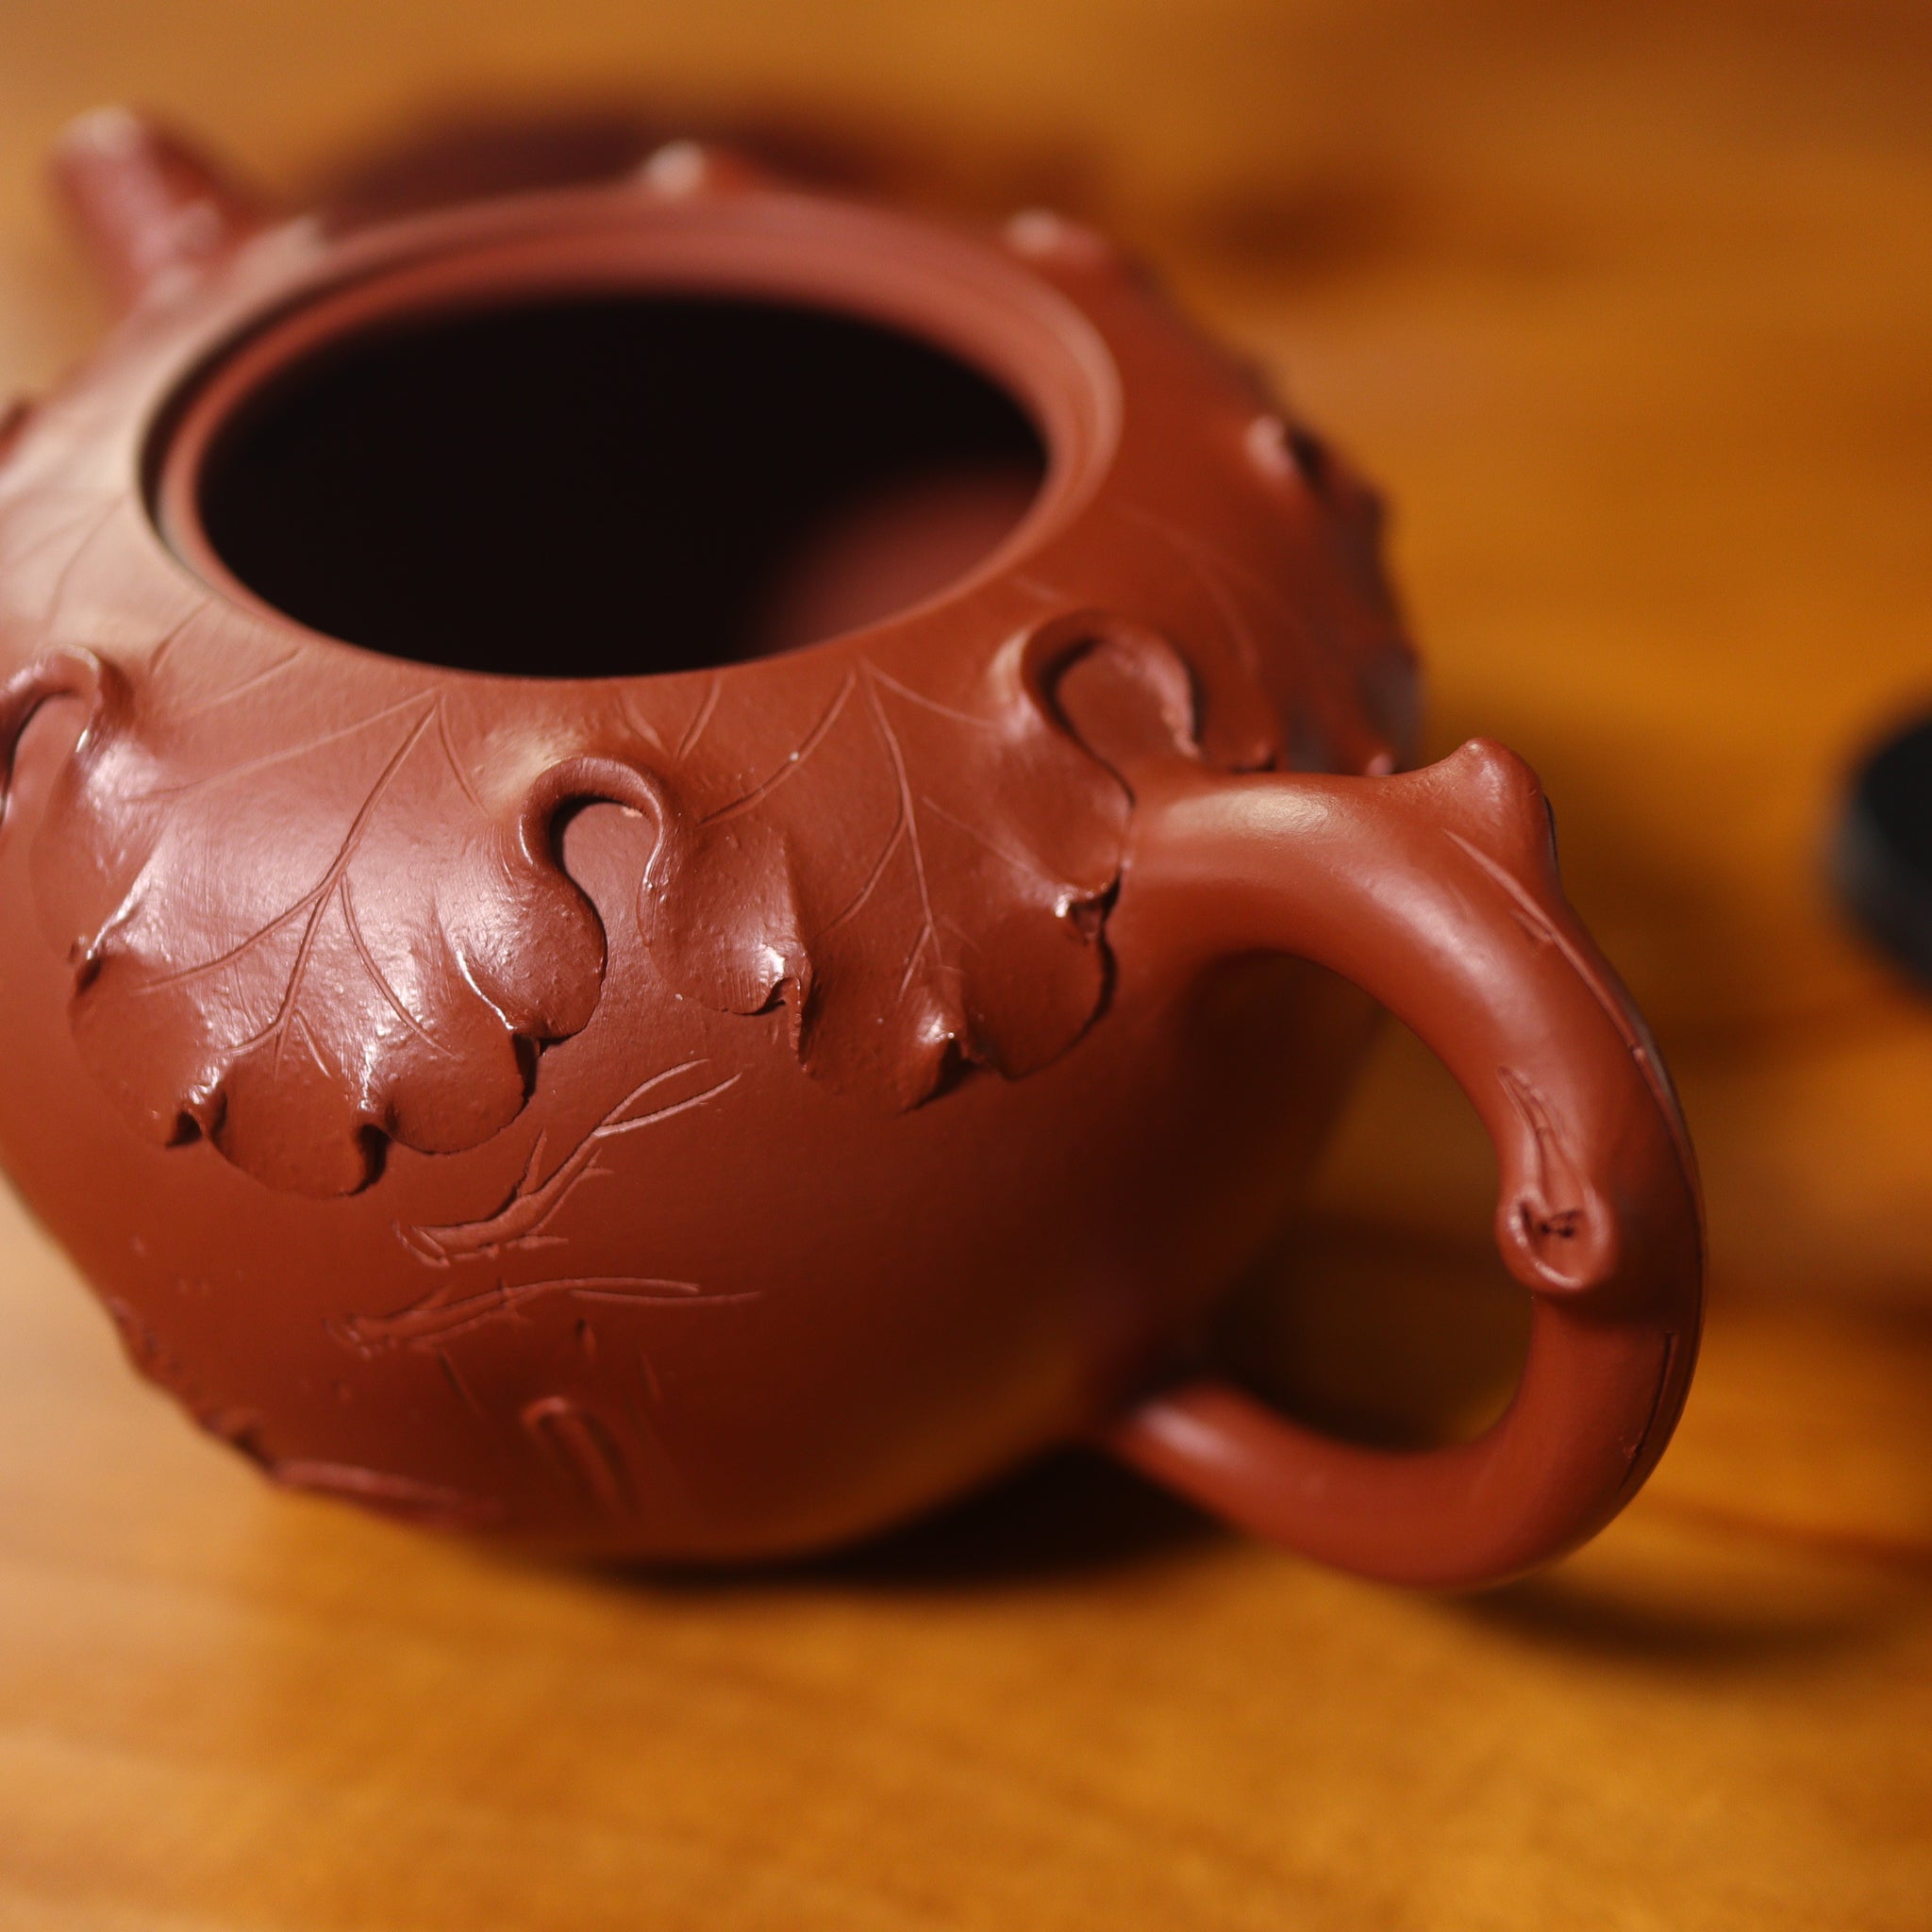 （已售出）*新品*【清蓮】原礦大紅袍貼花雕刻字畫紫砂茶壺